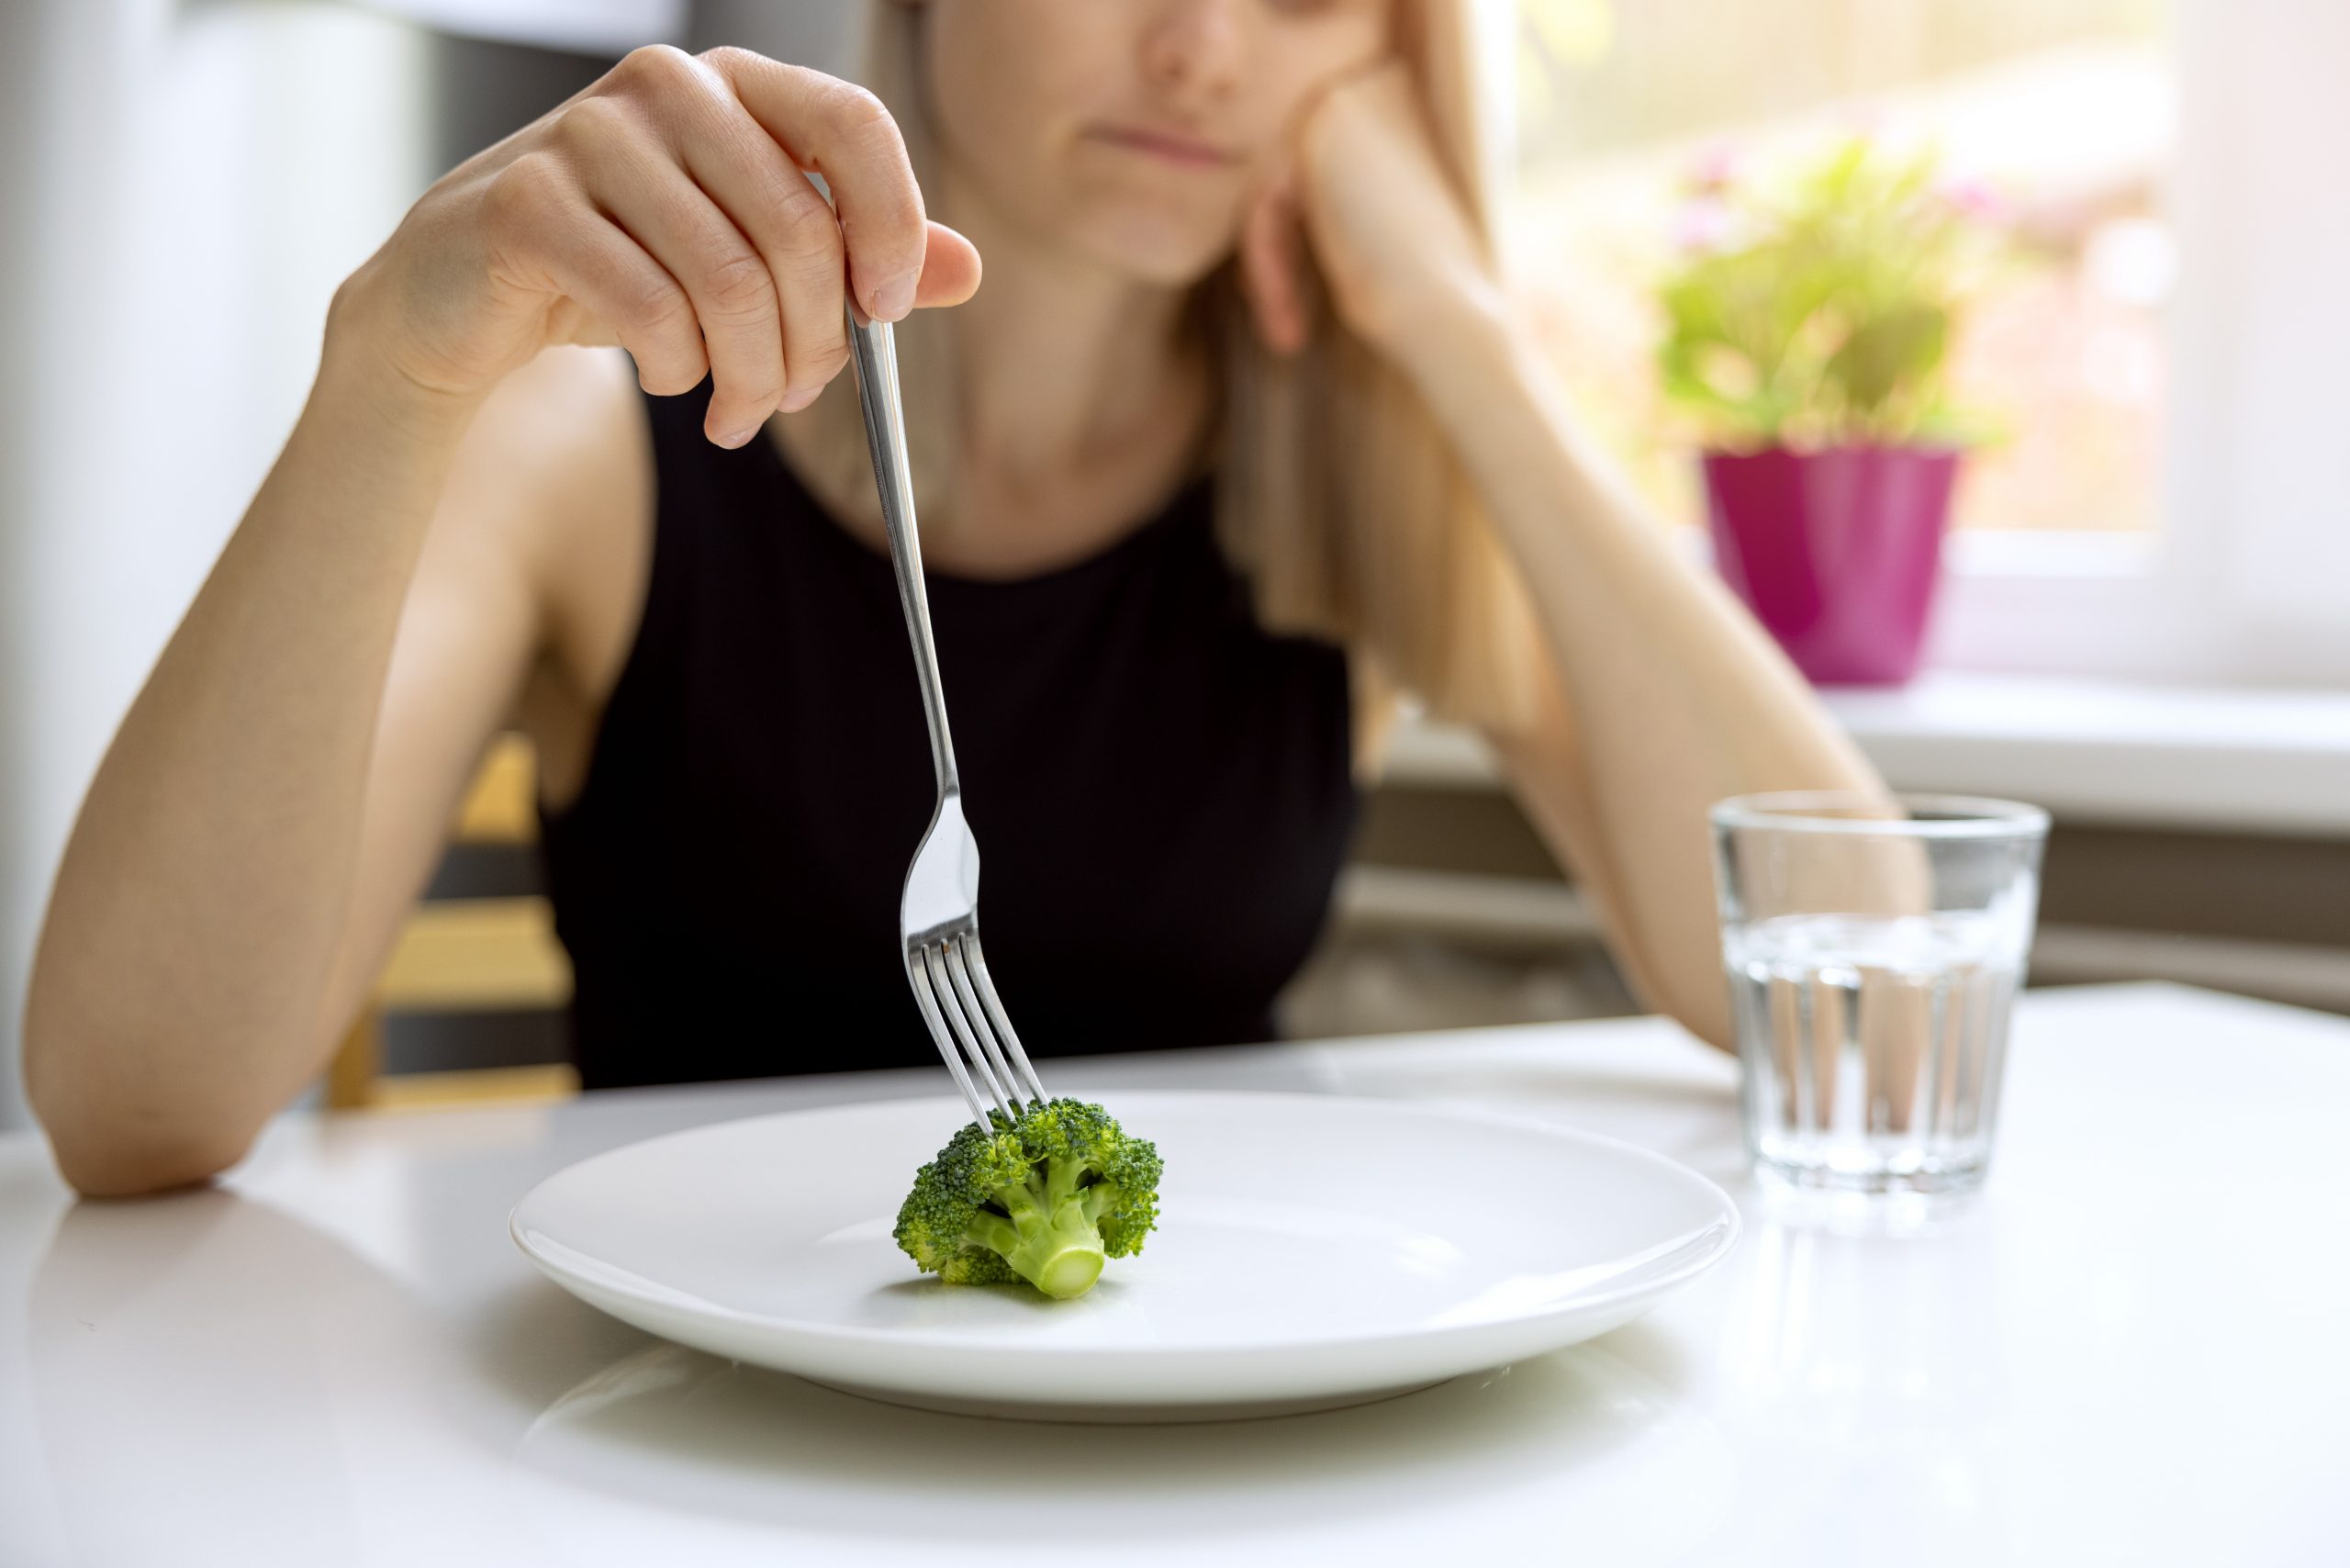 kobieta niechętnie patrzy na brokuła na talerzu